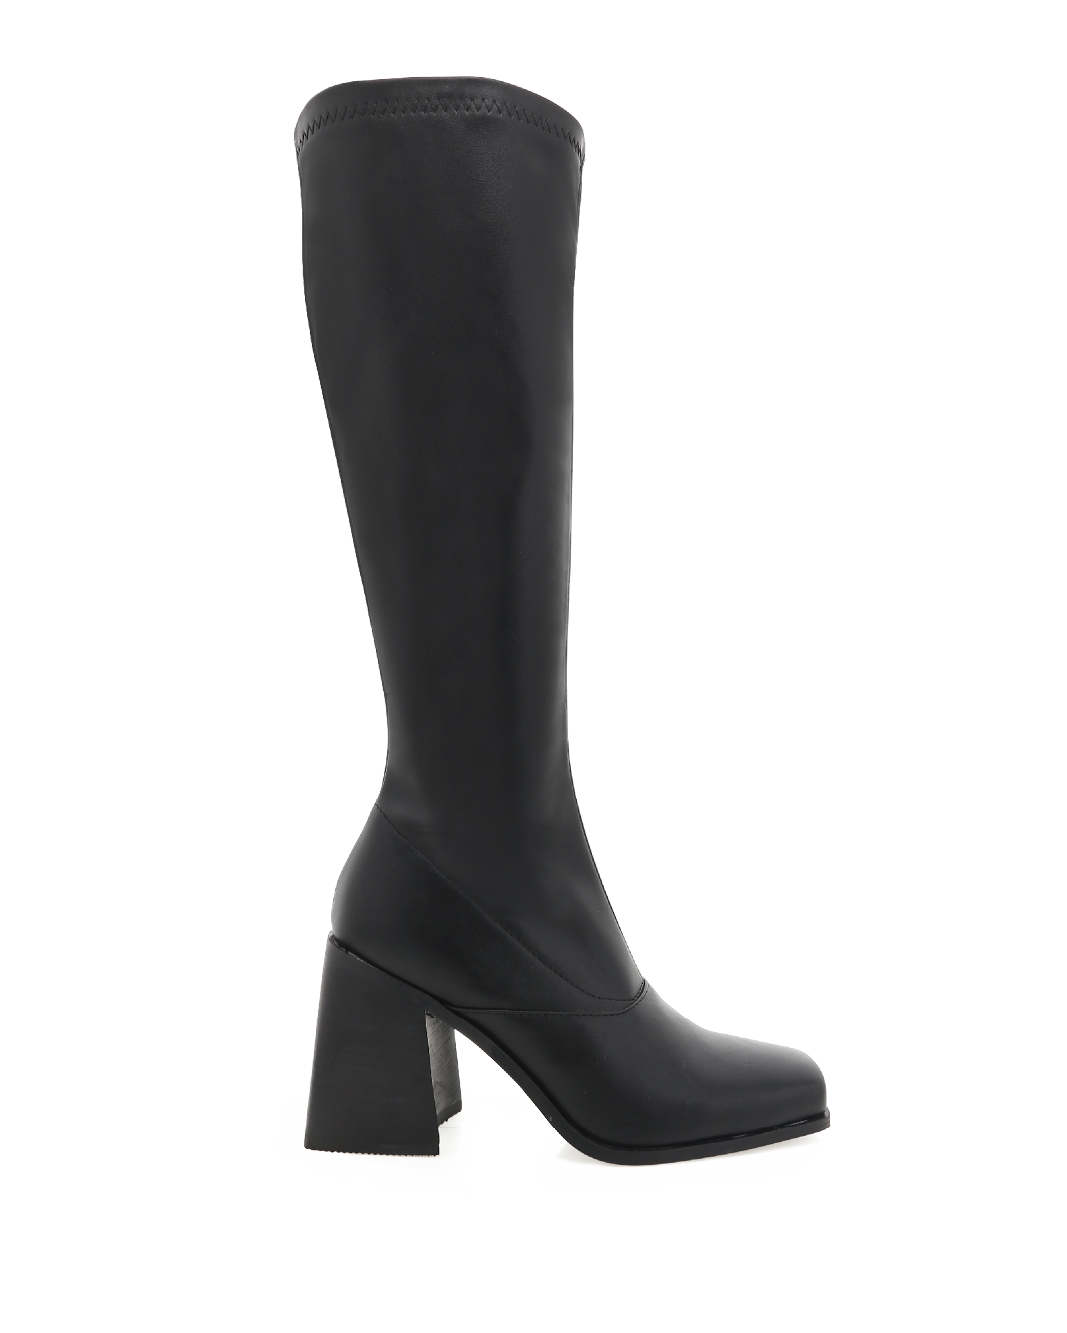 REGAN - BLACK-Boots-Billini-BILLINI USA